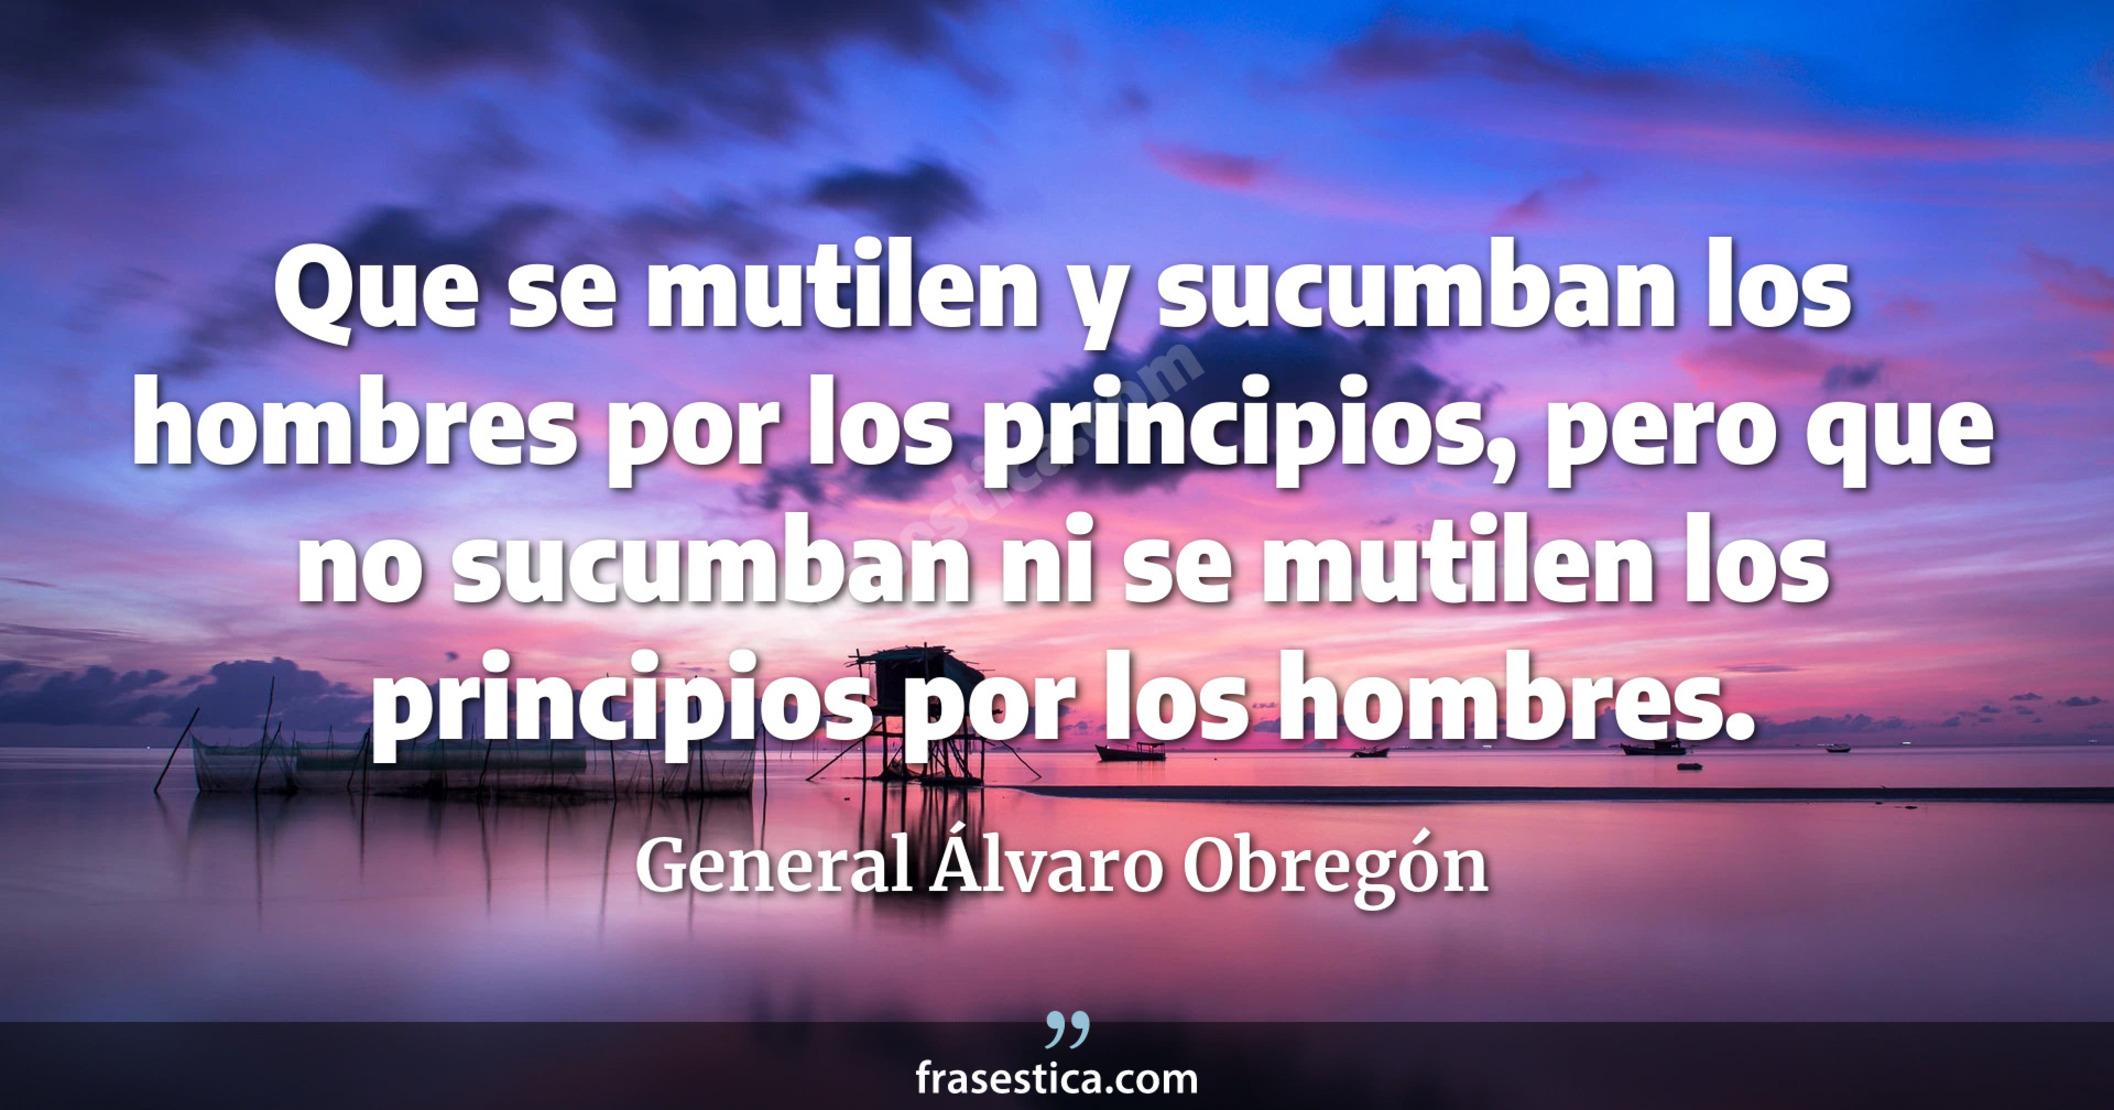 Que se mutilen y sucumban los hombres por los principios, pero que no sucumban ni se mutilen los principios por los hombres. - General Álvaro Obregón